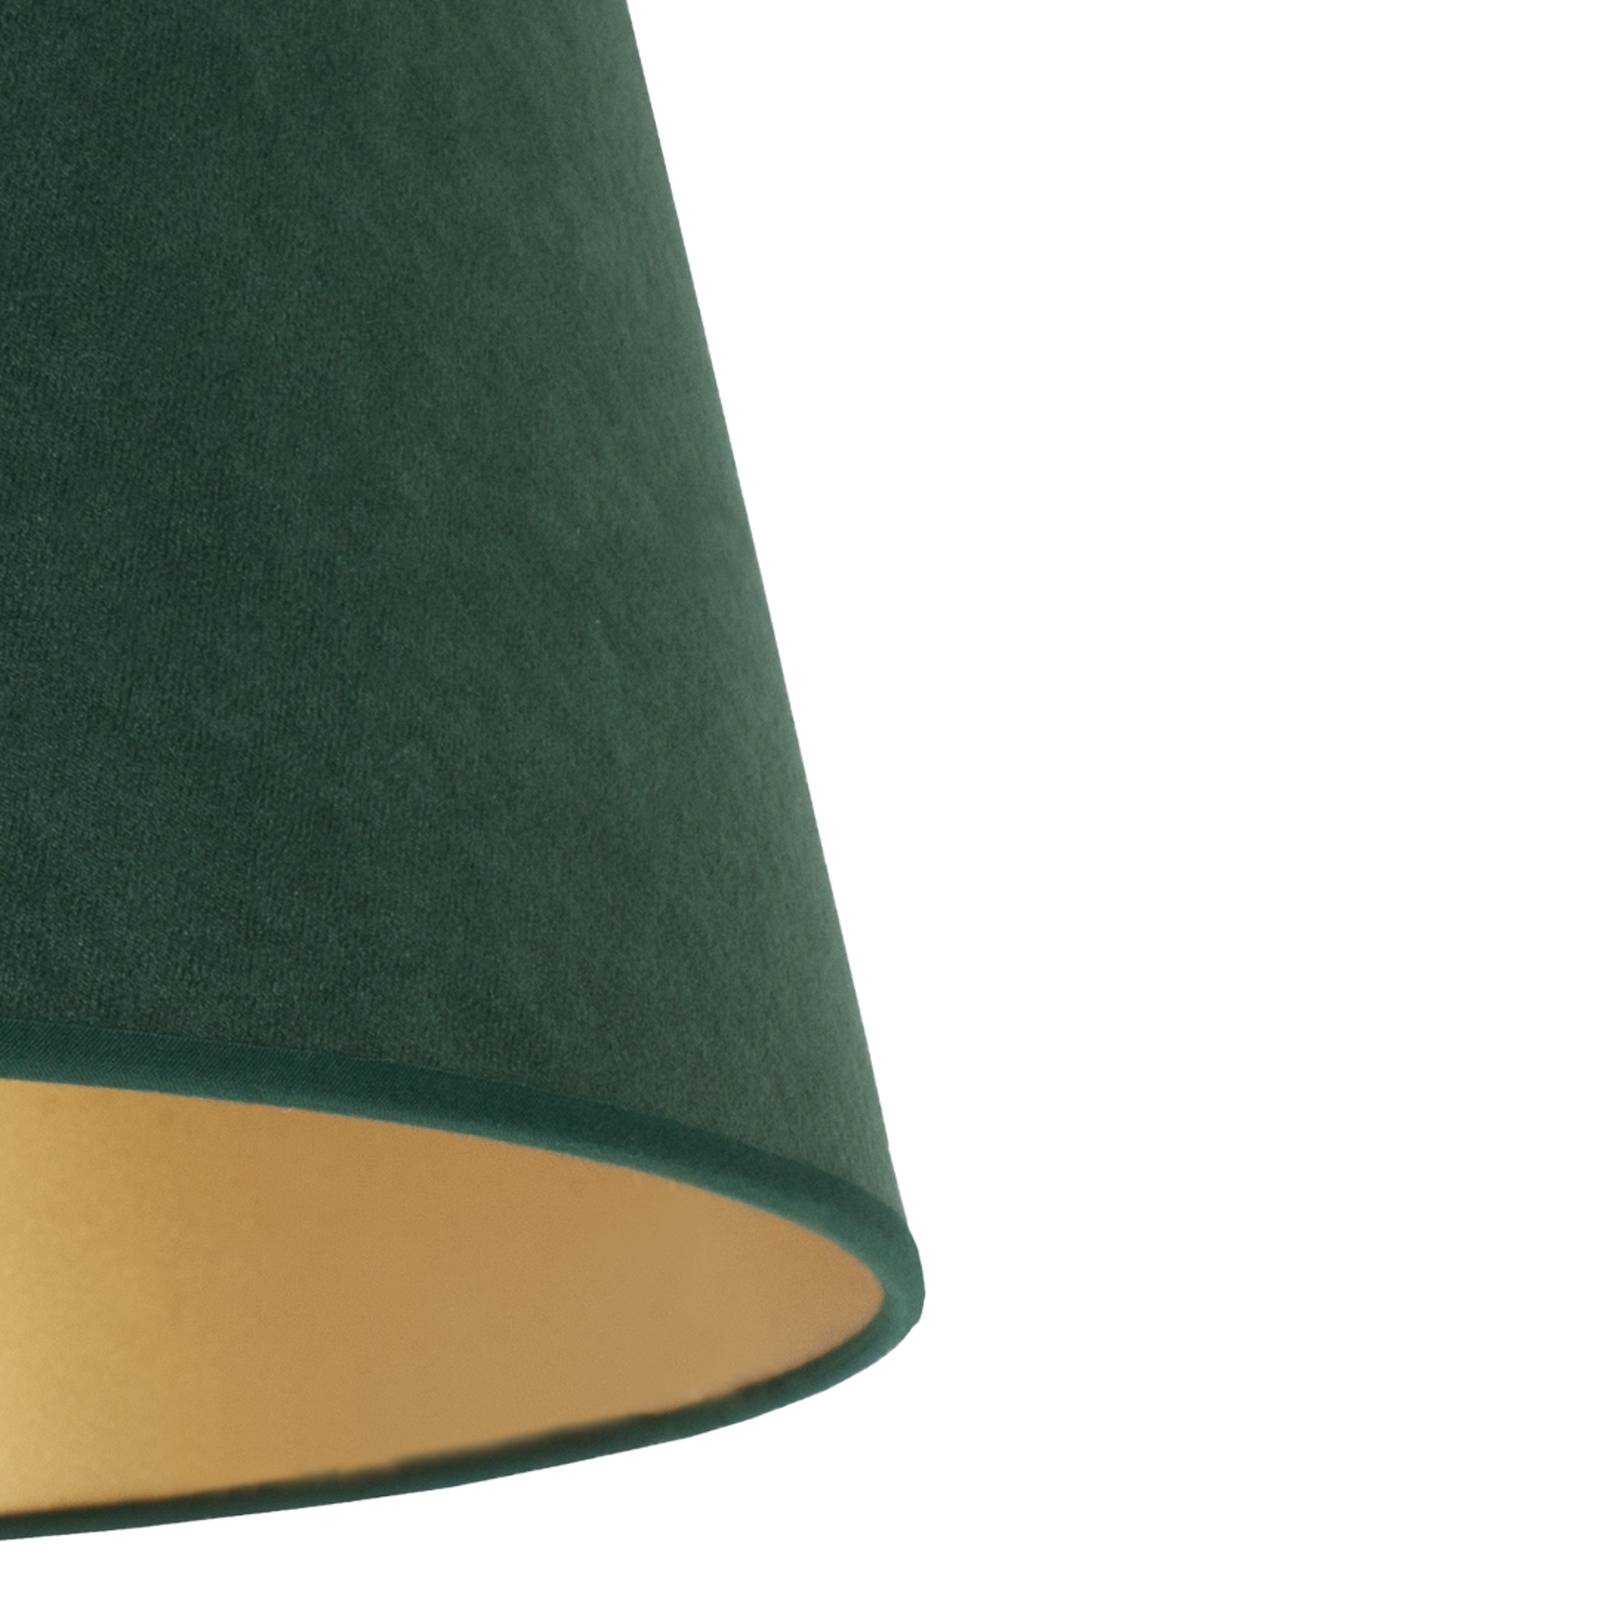 Cone lámpaernyő 18 cm magas, sötétzöld/arany